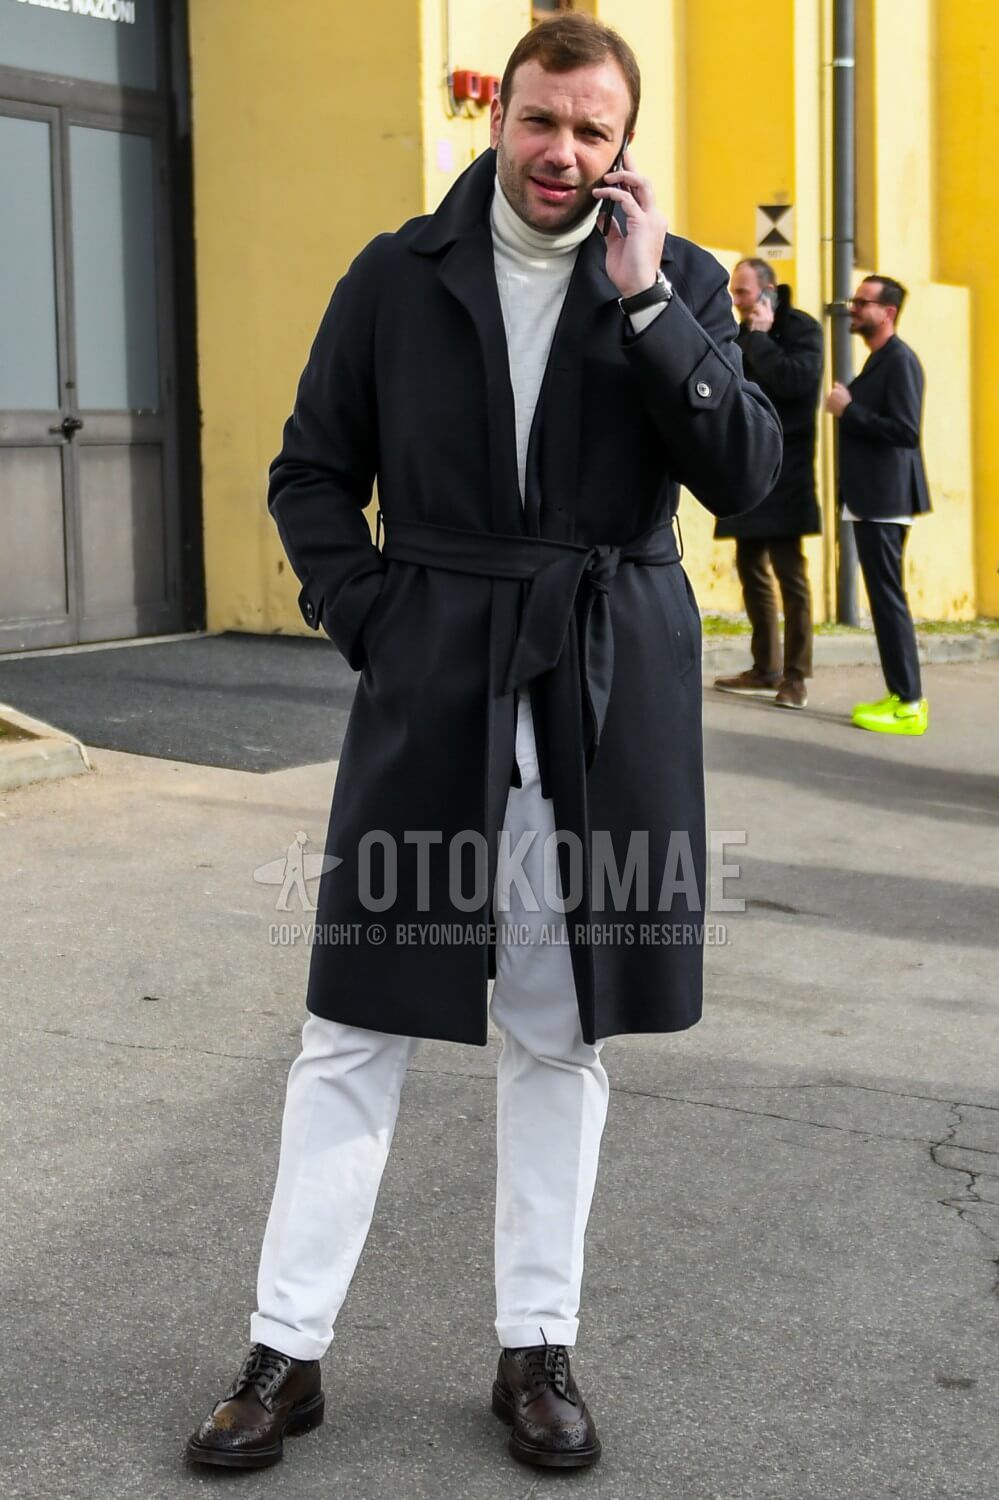 白ニット コーデ メンズ特集 秋冬に実践したい大人の着こなし アイテムを紹介 メンズファッションメディア Otokomae 男前研究所